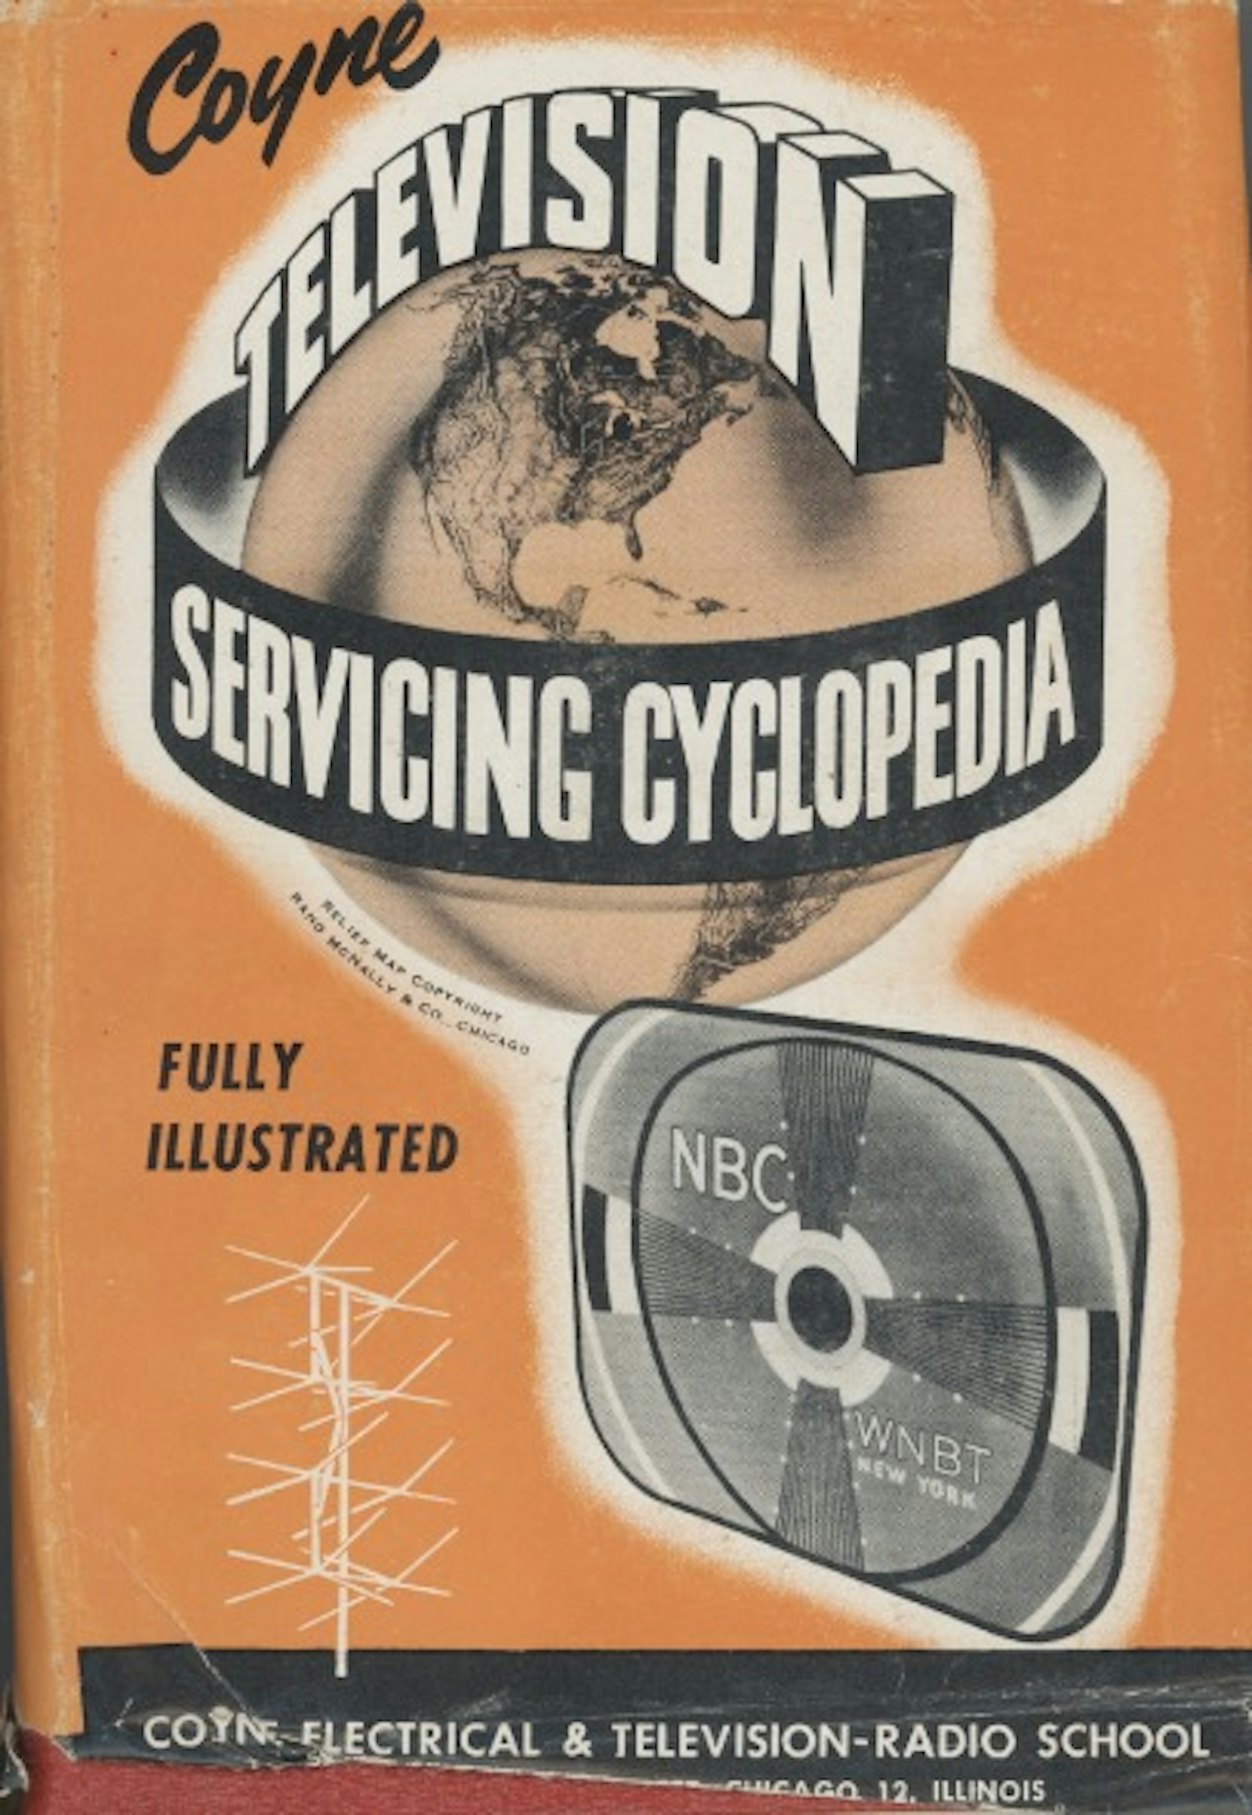 Television Servicing Cyclopedia